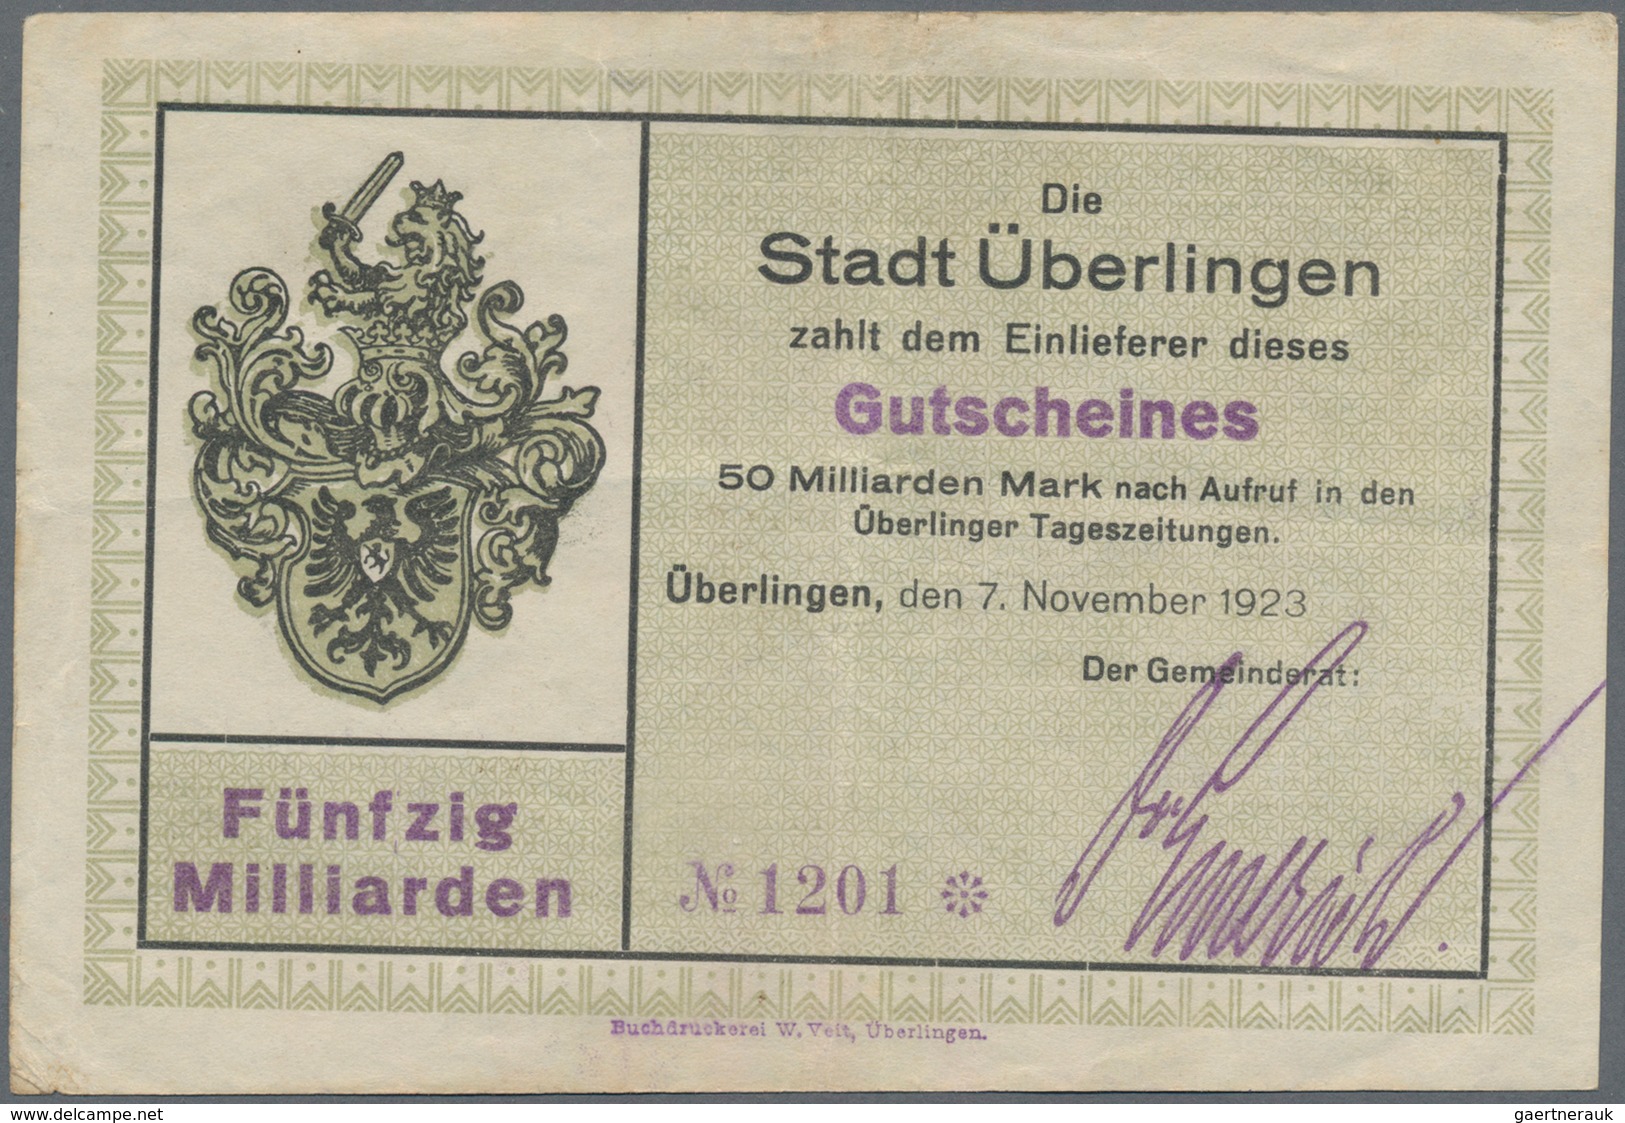 Deutschland - Notgeld - Baden: Überlingen, Stadt, 5 Tsd., 20 Tsd. Mark, 16.2.1923, mit Druckfirma un